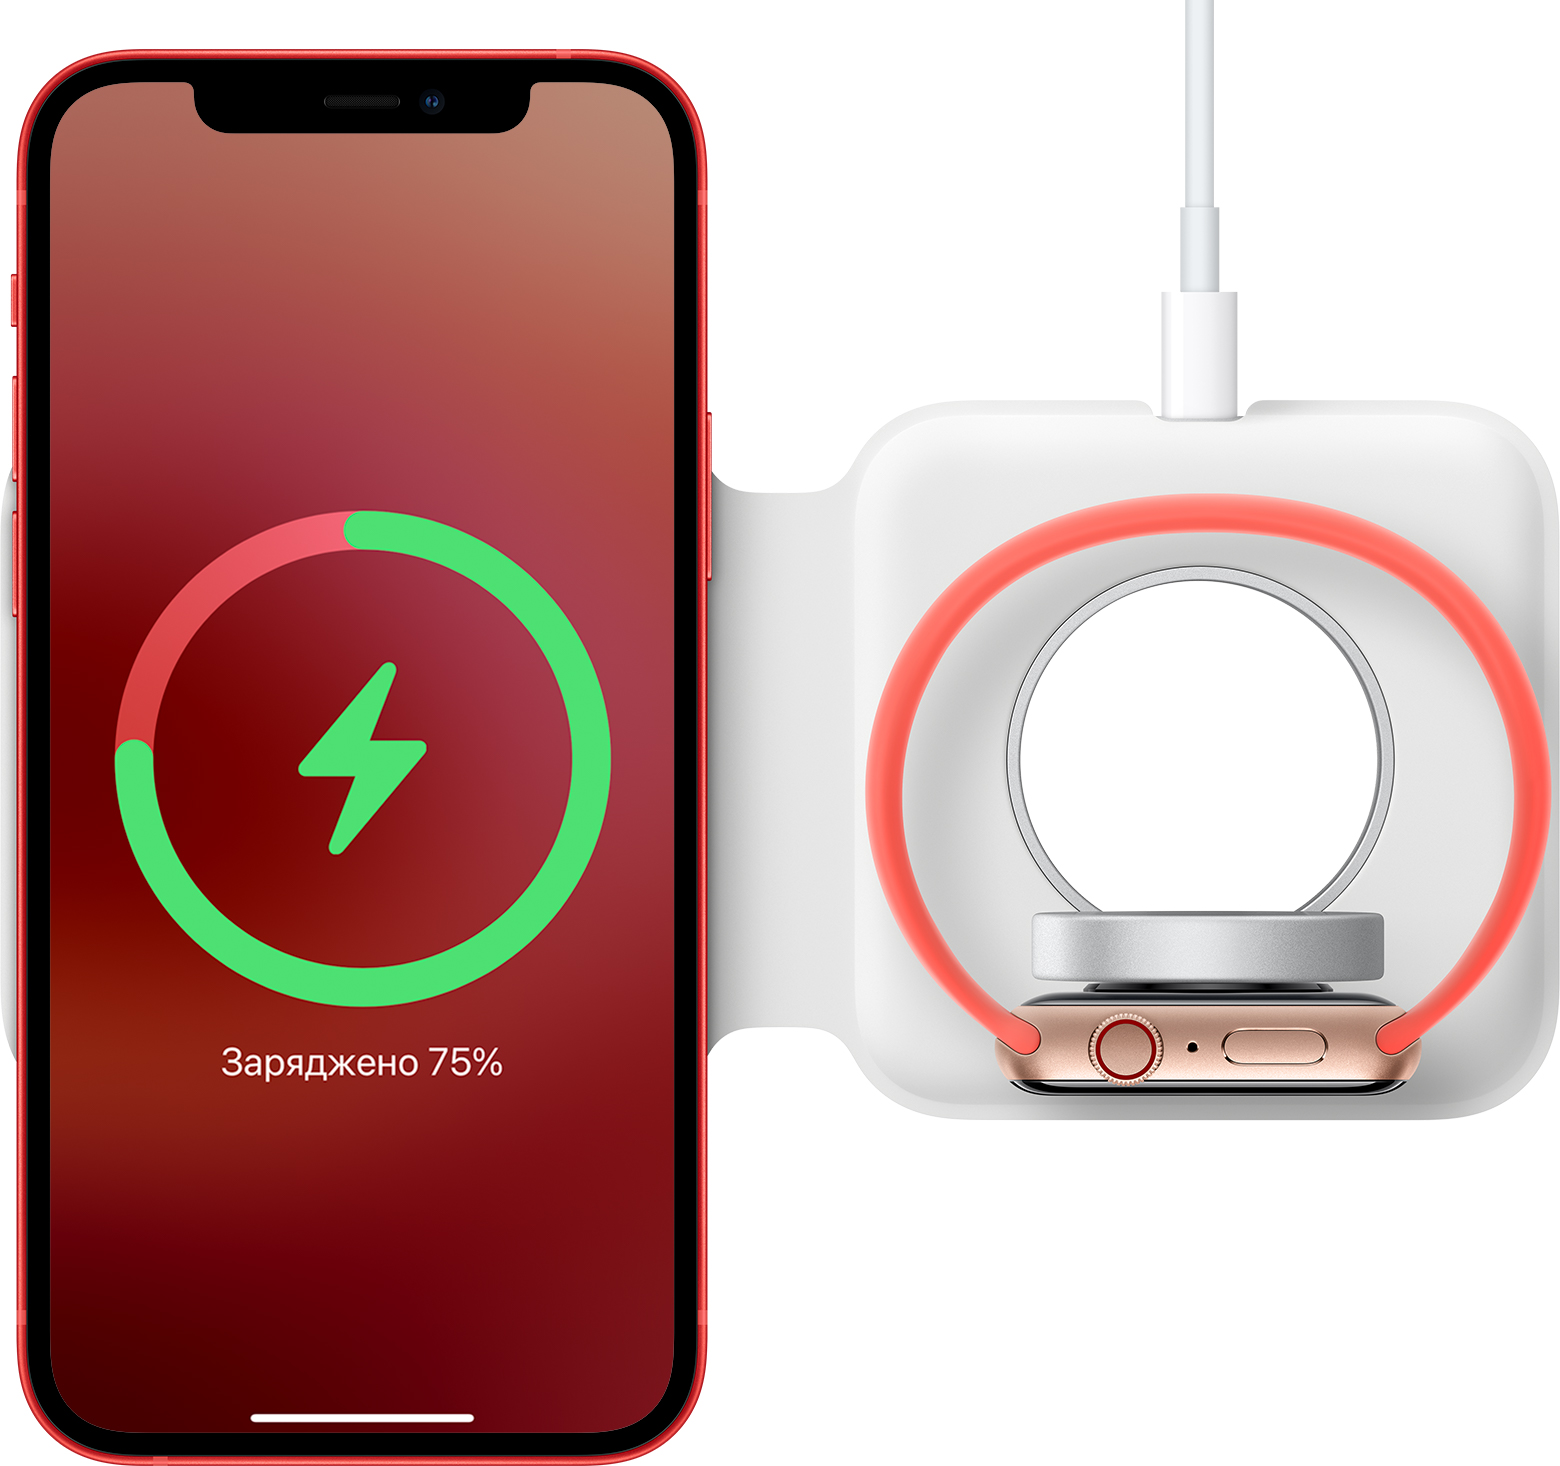 Зарядний пристрій MagSafe Duo лицевим боком догори, на якому заряджаються iPhone і Apple Watch